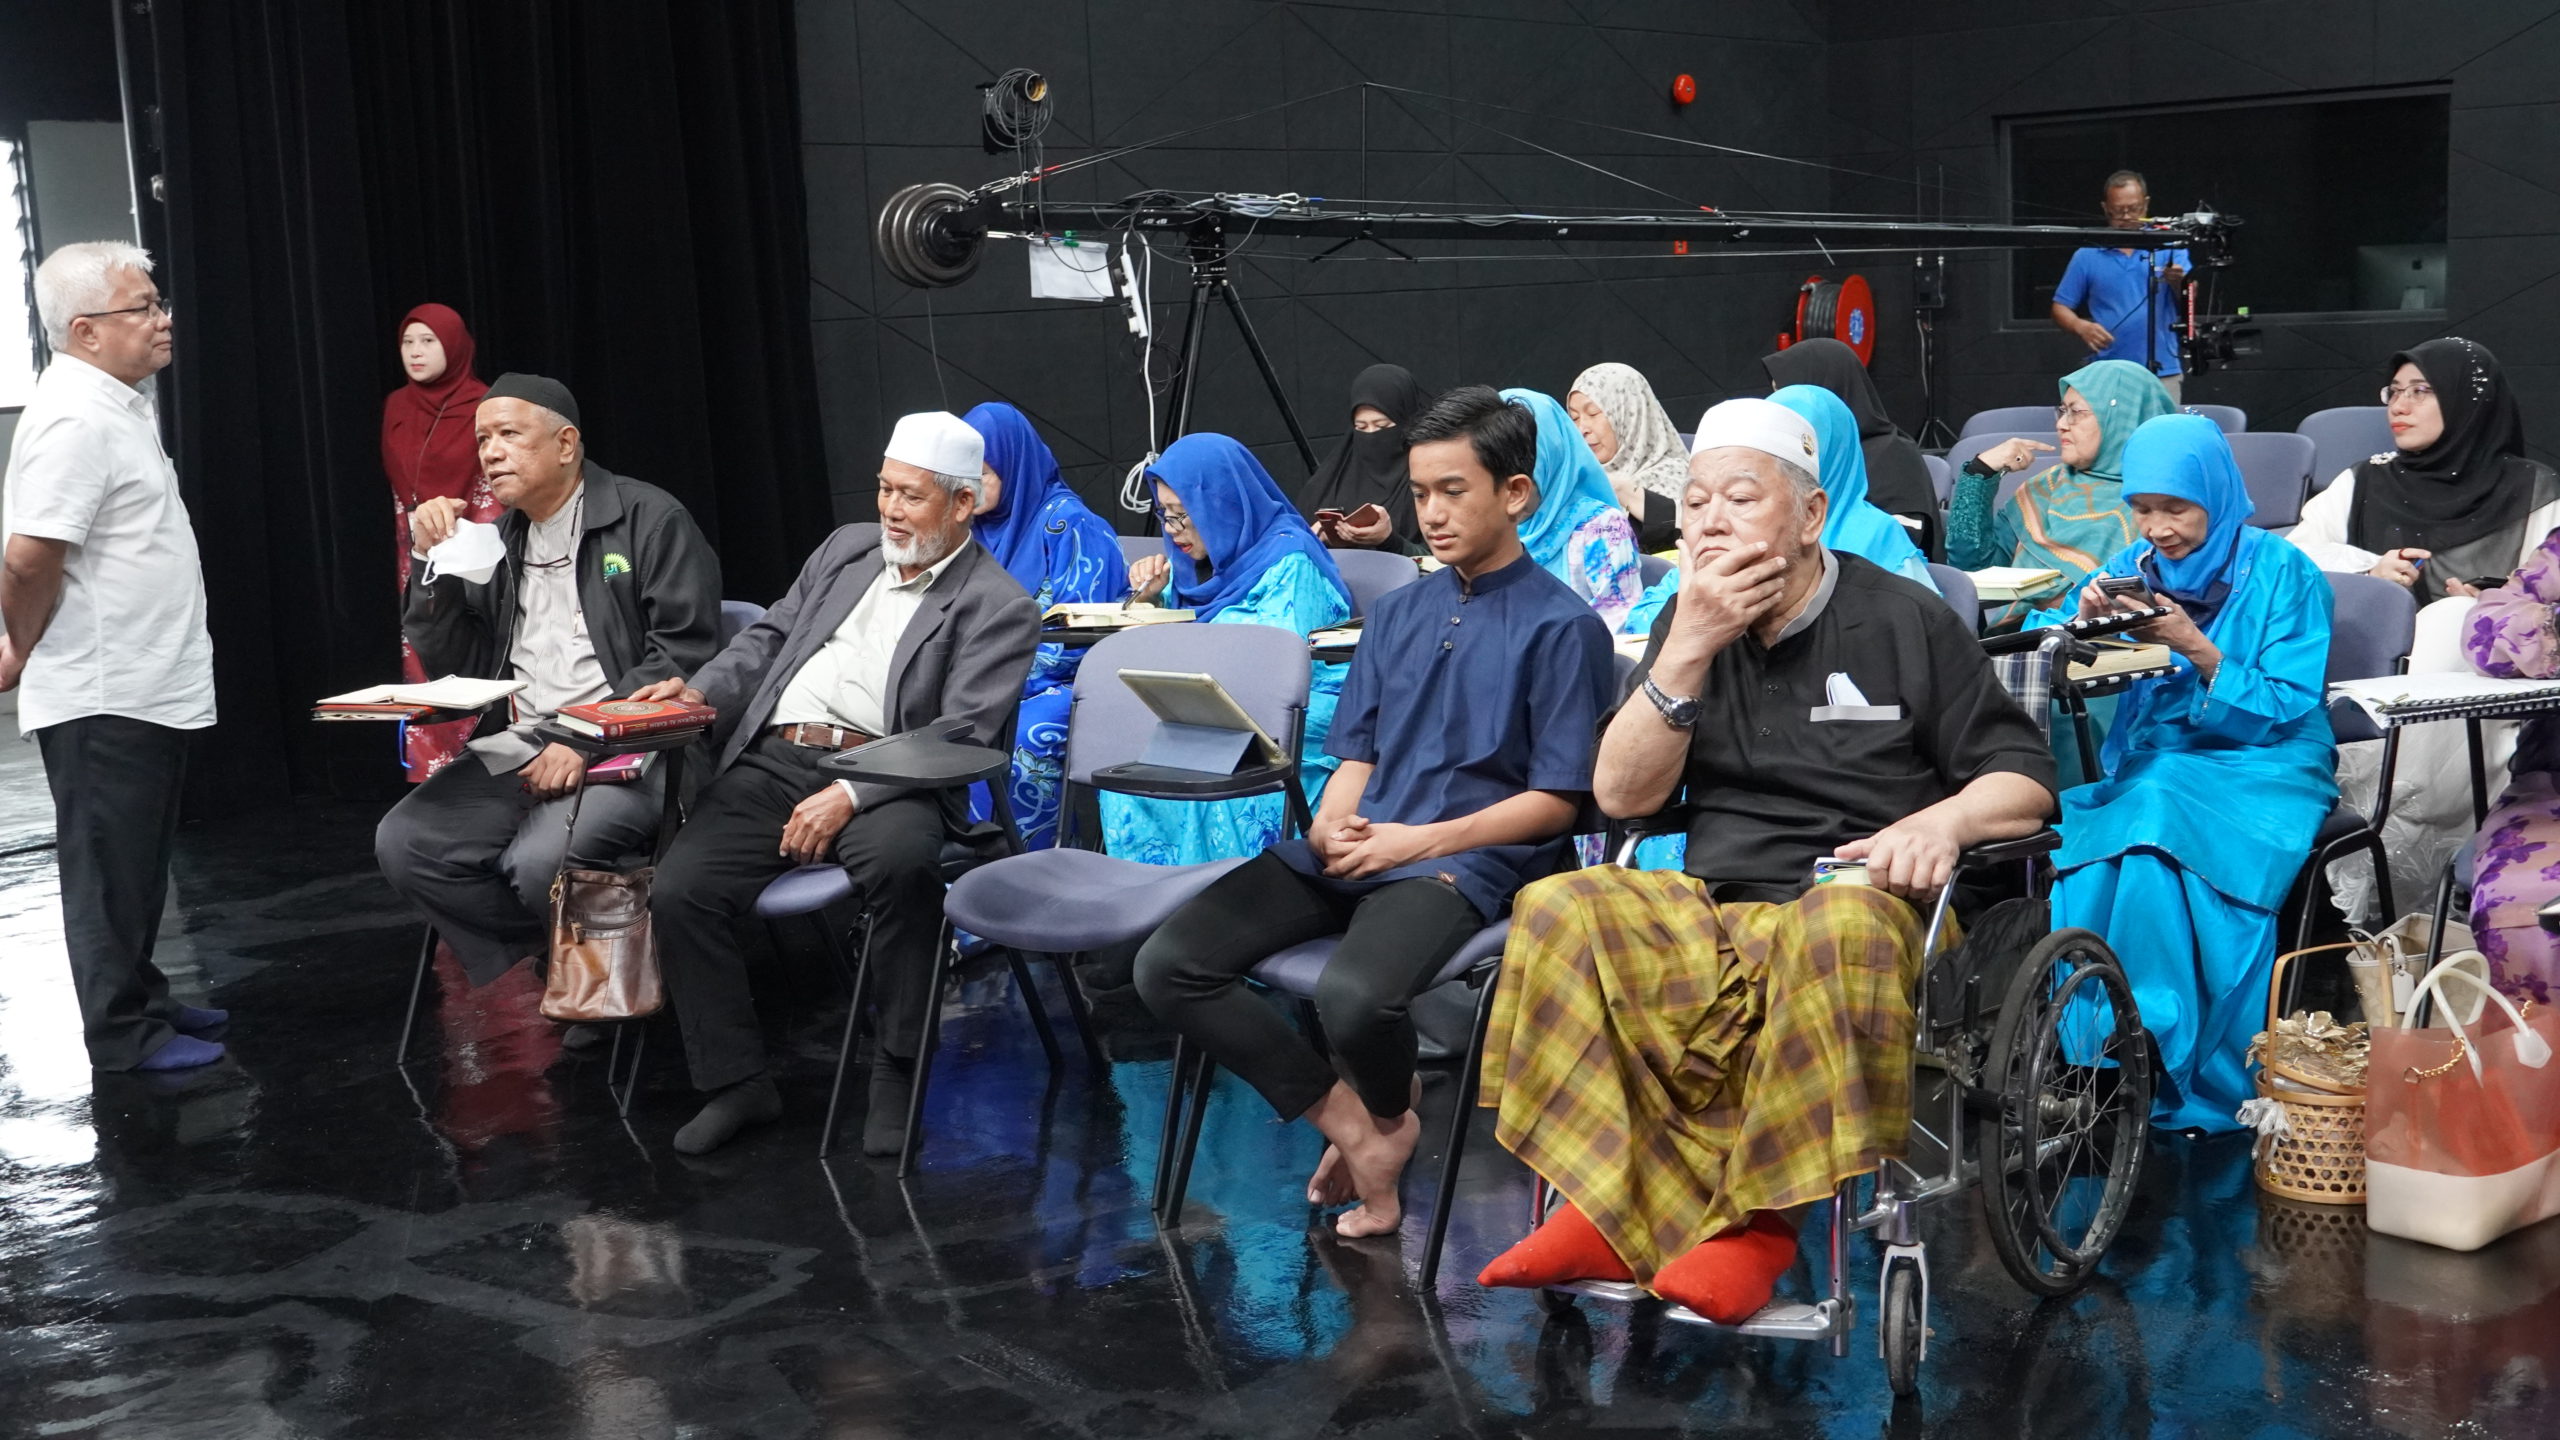 Datuk Hussamuddin berbual mesra dengan penonton sebelum sesi penggambaran MQT dimulakan.